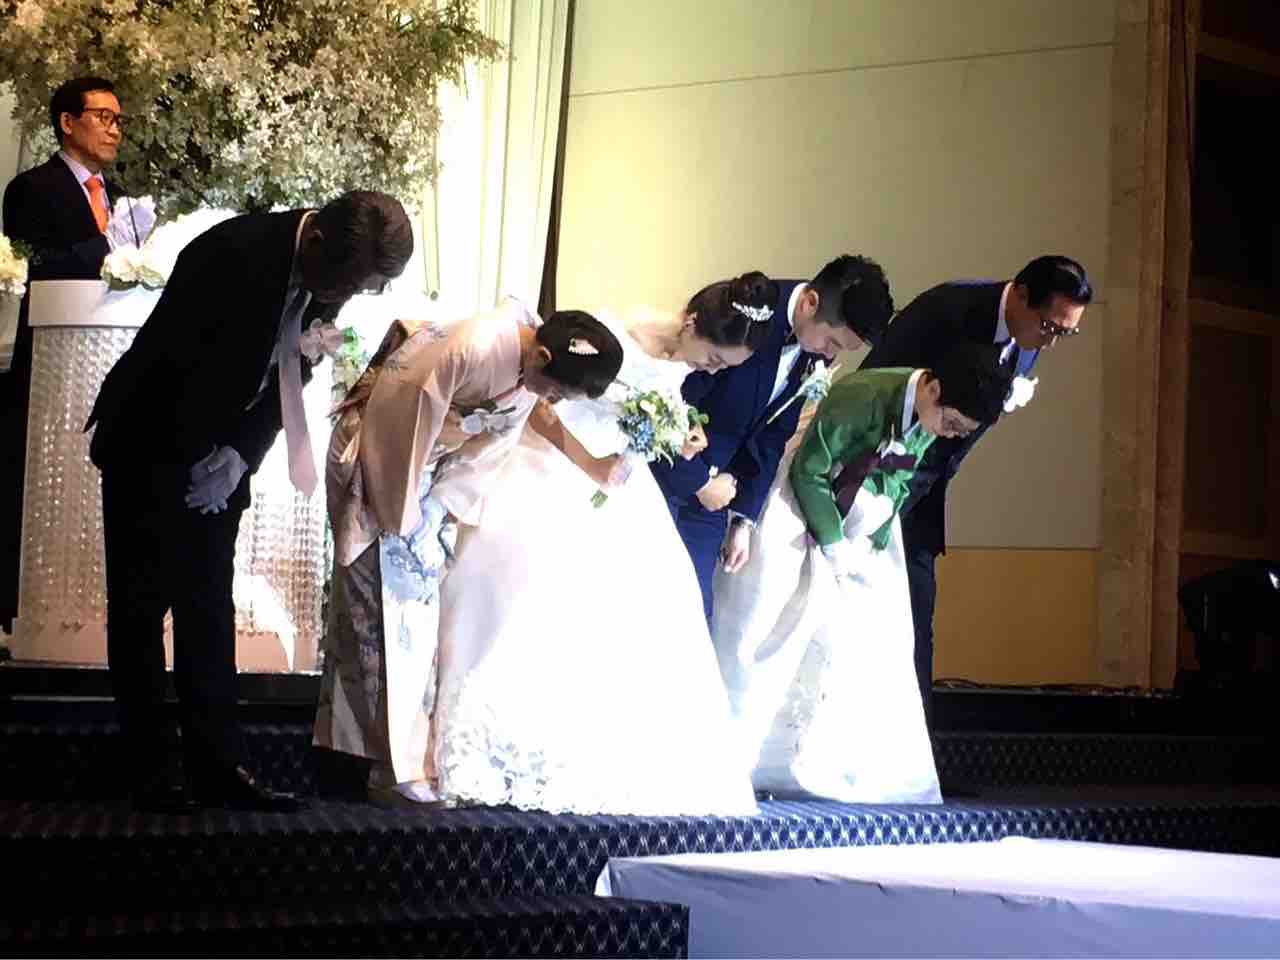 日韓 国際結婚 入籍と結婚式はどうする 私たちのパターン 載昊との暮らし